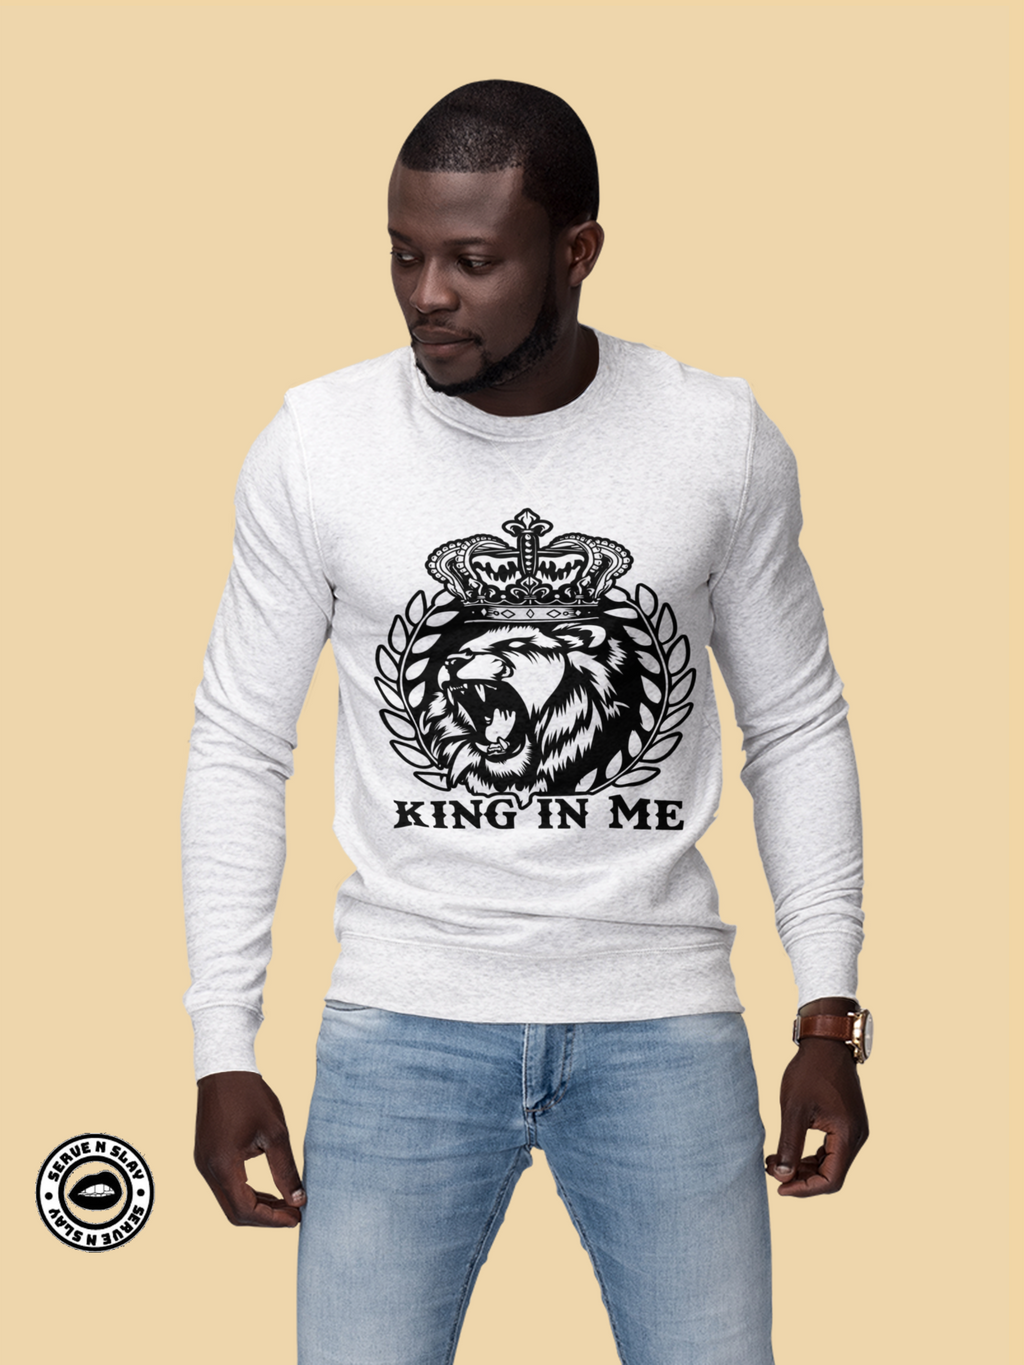 King In Me Sweatshirt - Black Empowerment Apparel, Black Power Apparel, Black Culture Apparel, Black History Apparel, ServeNSlayTees, 